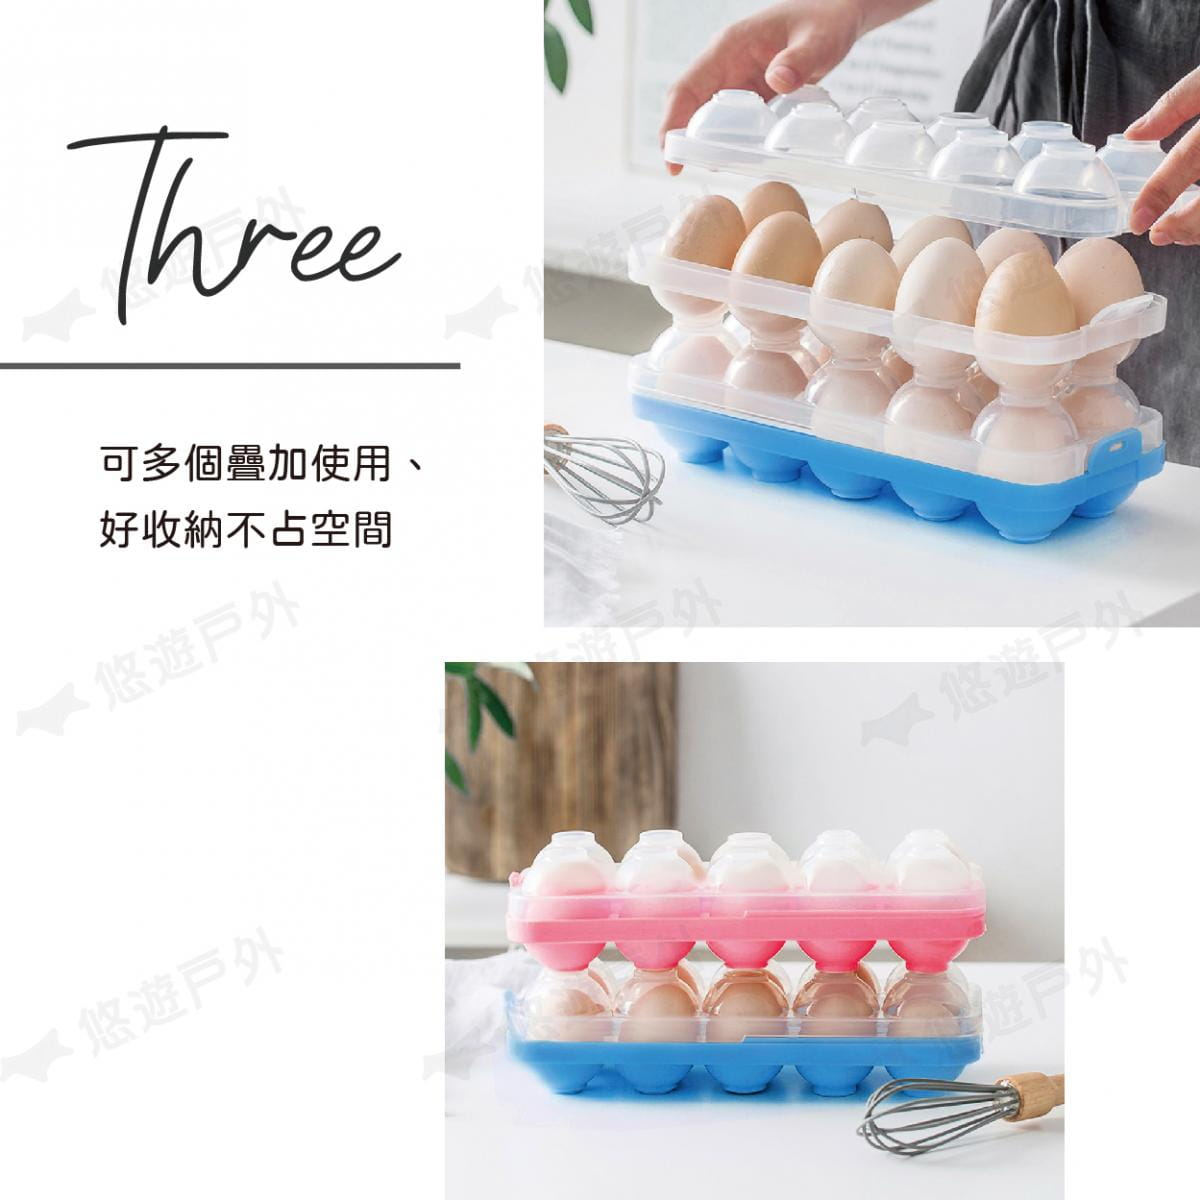 10格雞蛋收納盒 (悠遊戶外) 4